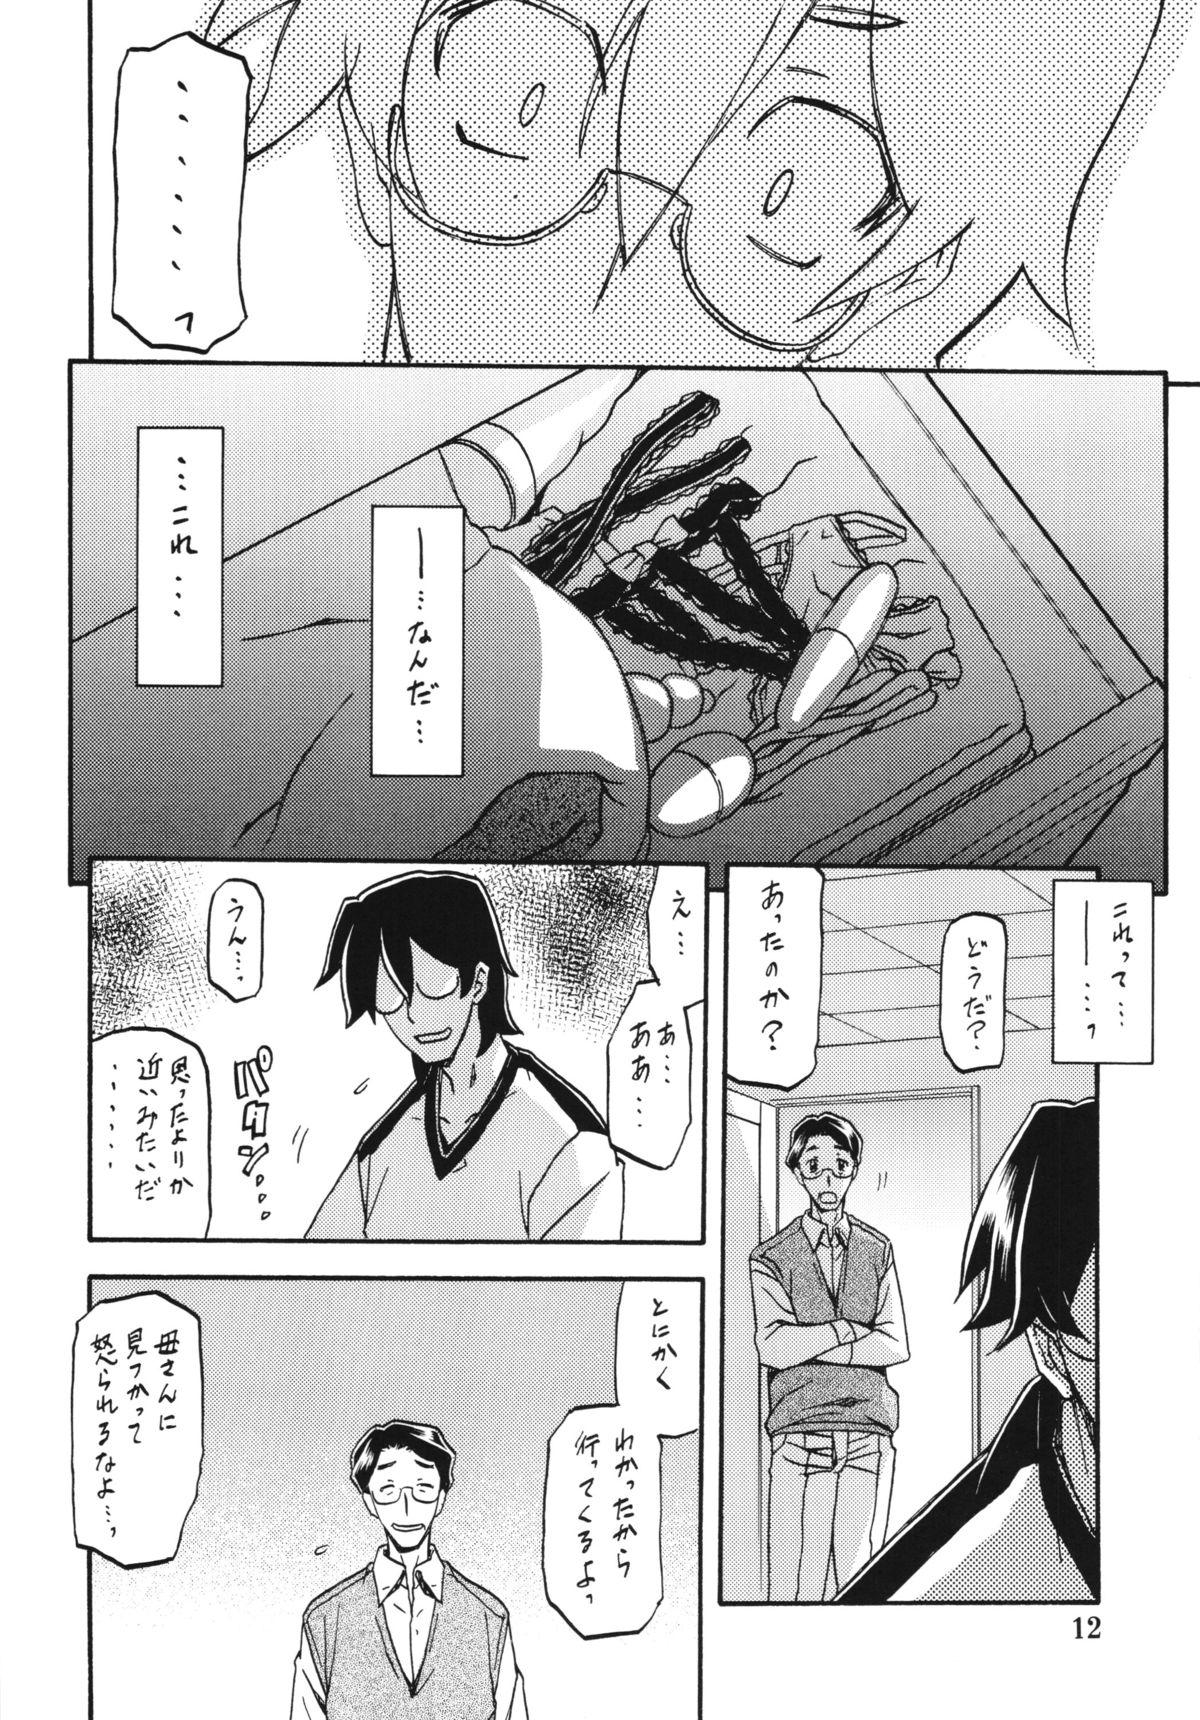 Fitness Akebi no Mi - Chizuru Foda - Page 12